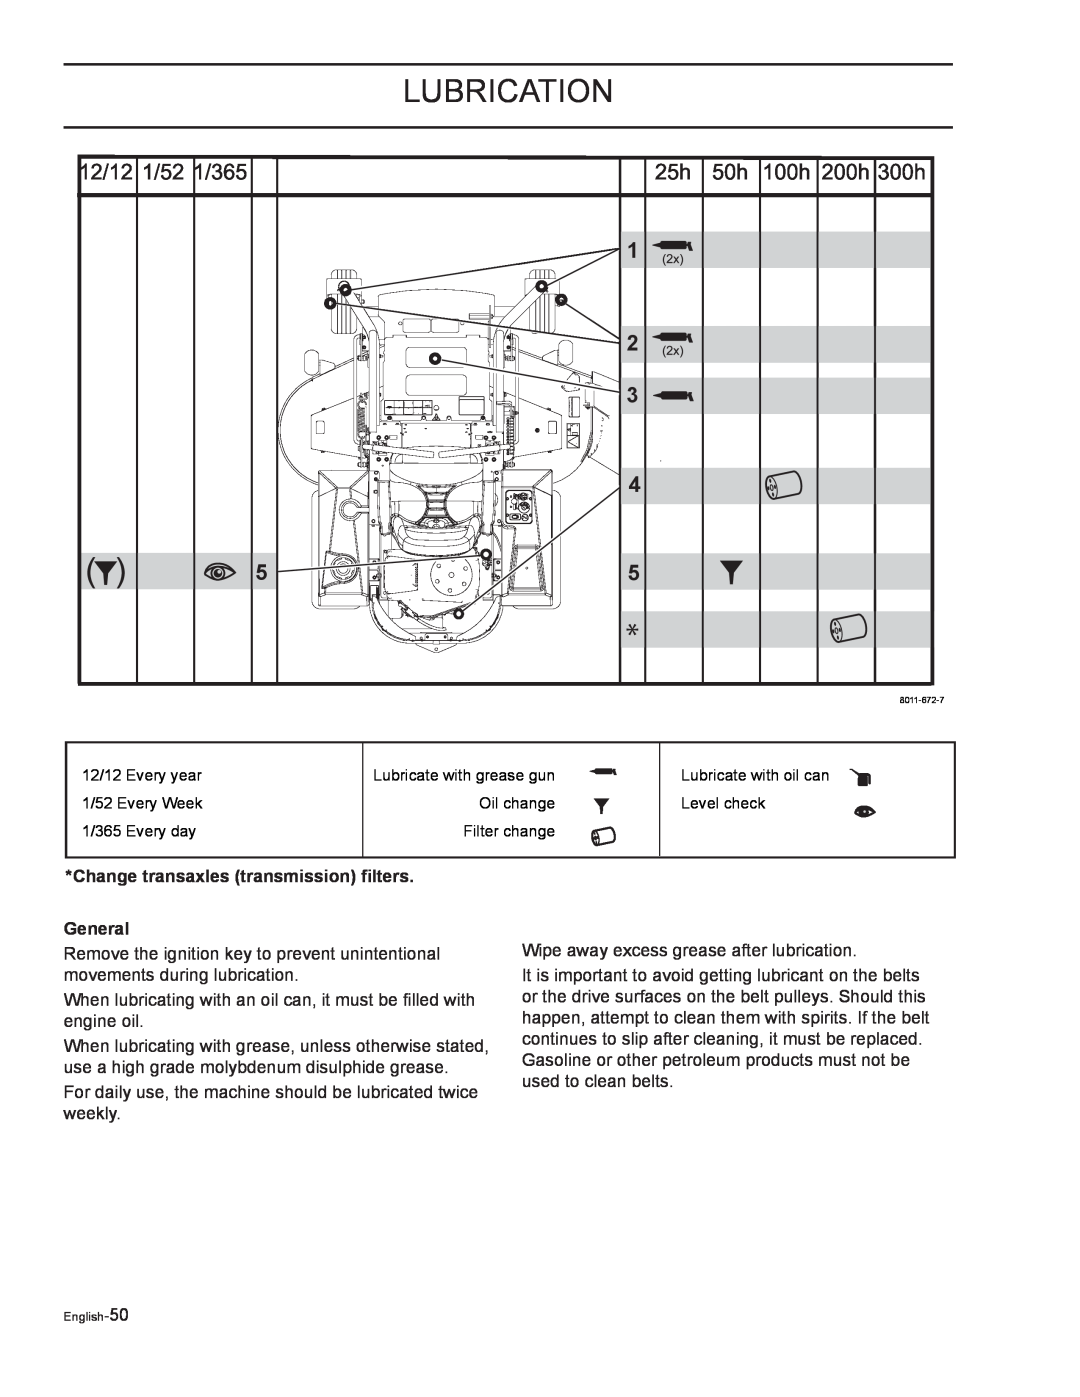 Yazoo/Kees ZELKH52250, ZELKH61250, ZELKH72270 manual Change transaxles transmission filters General, Lubrication 